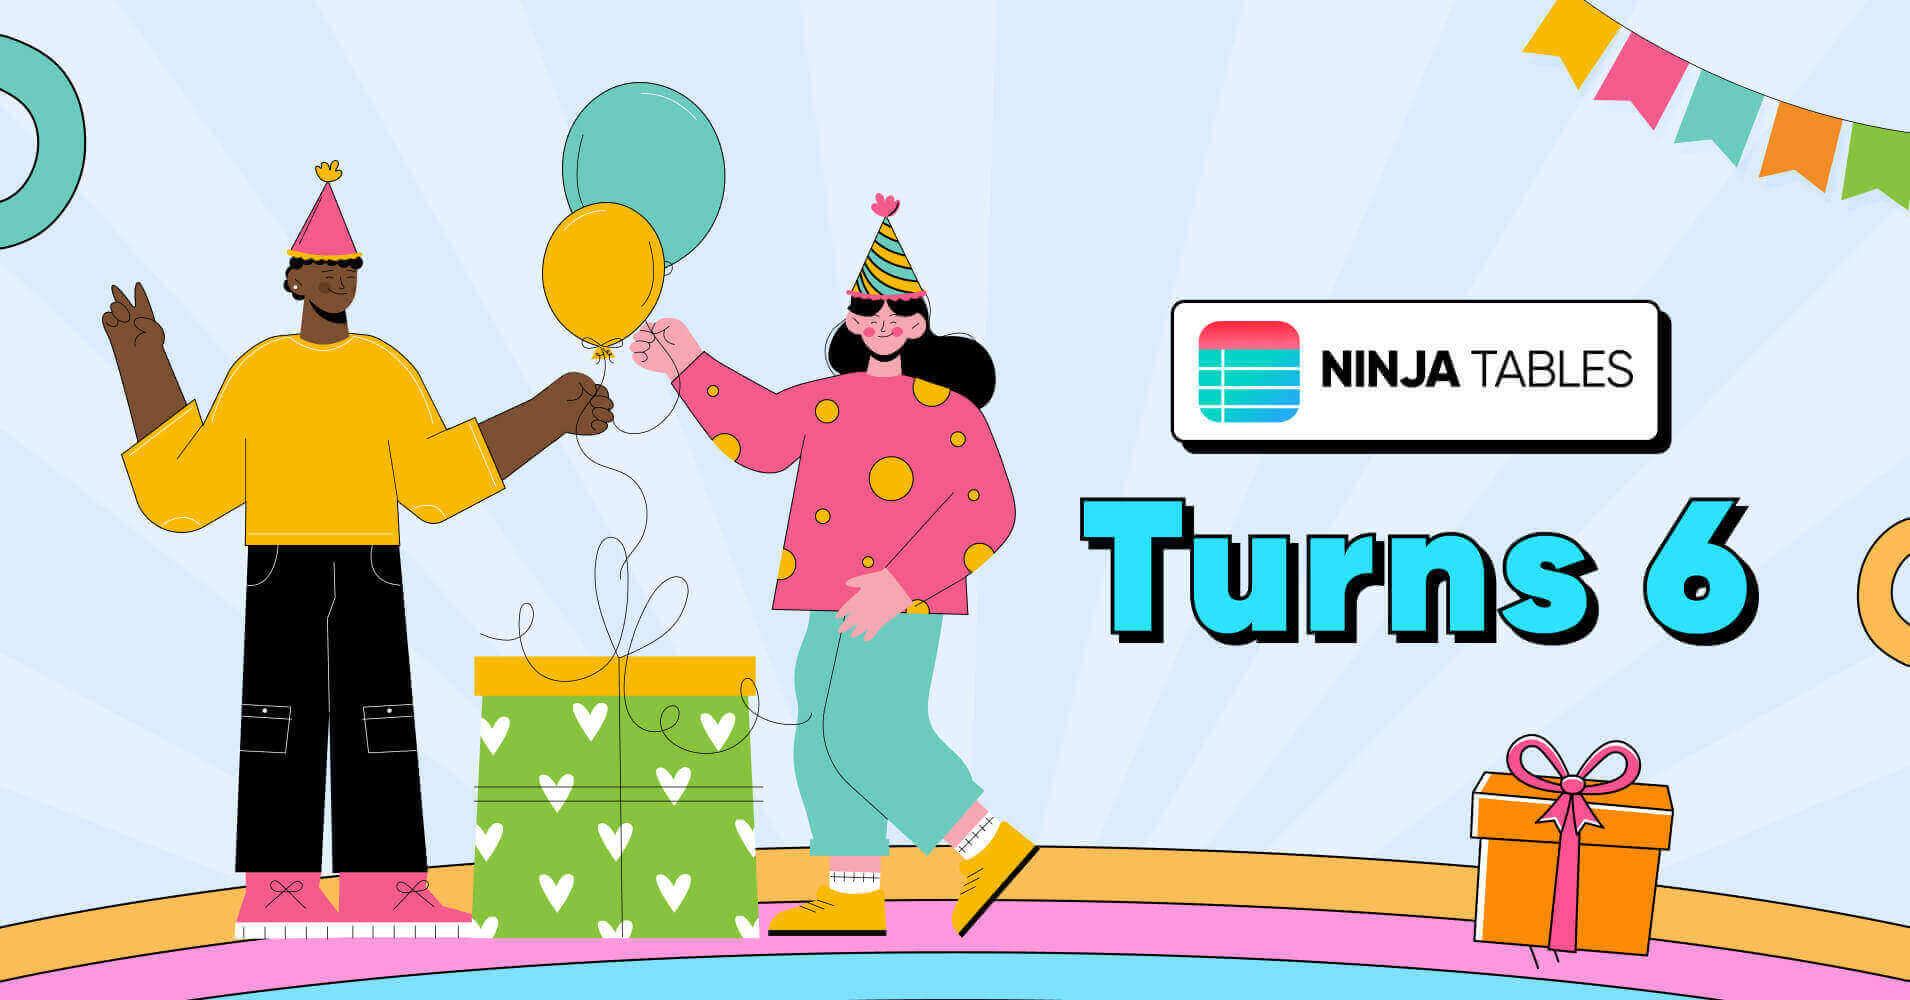 Ninja Tables turns 6